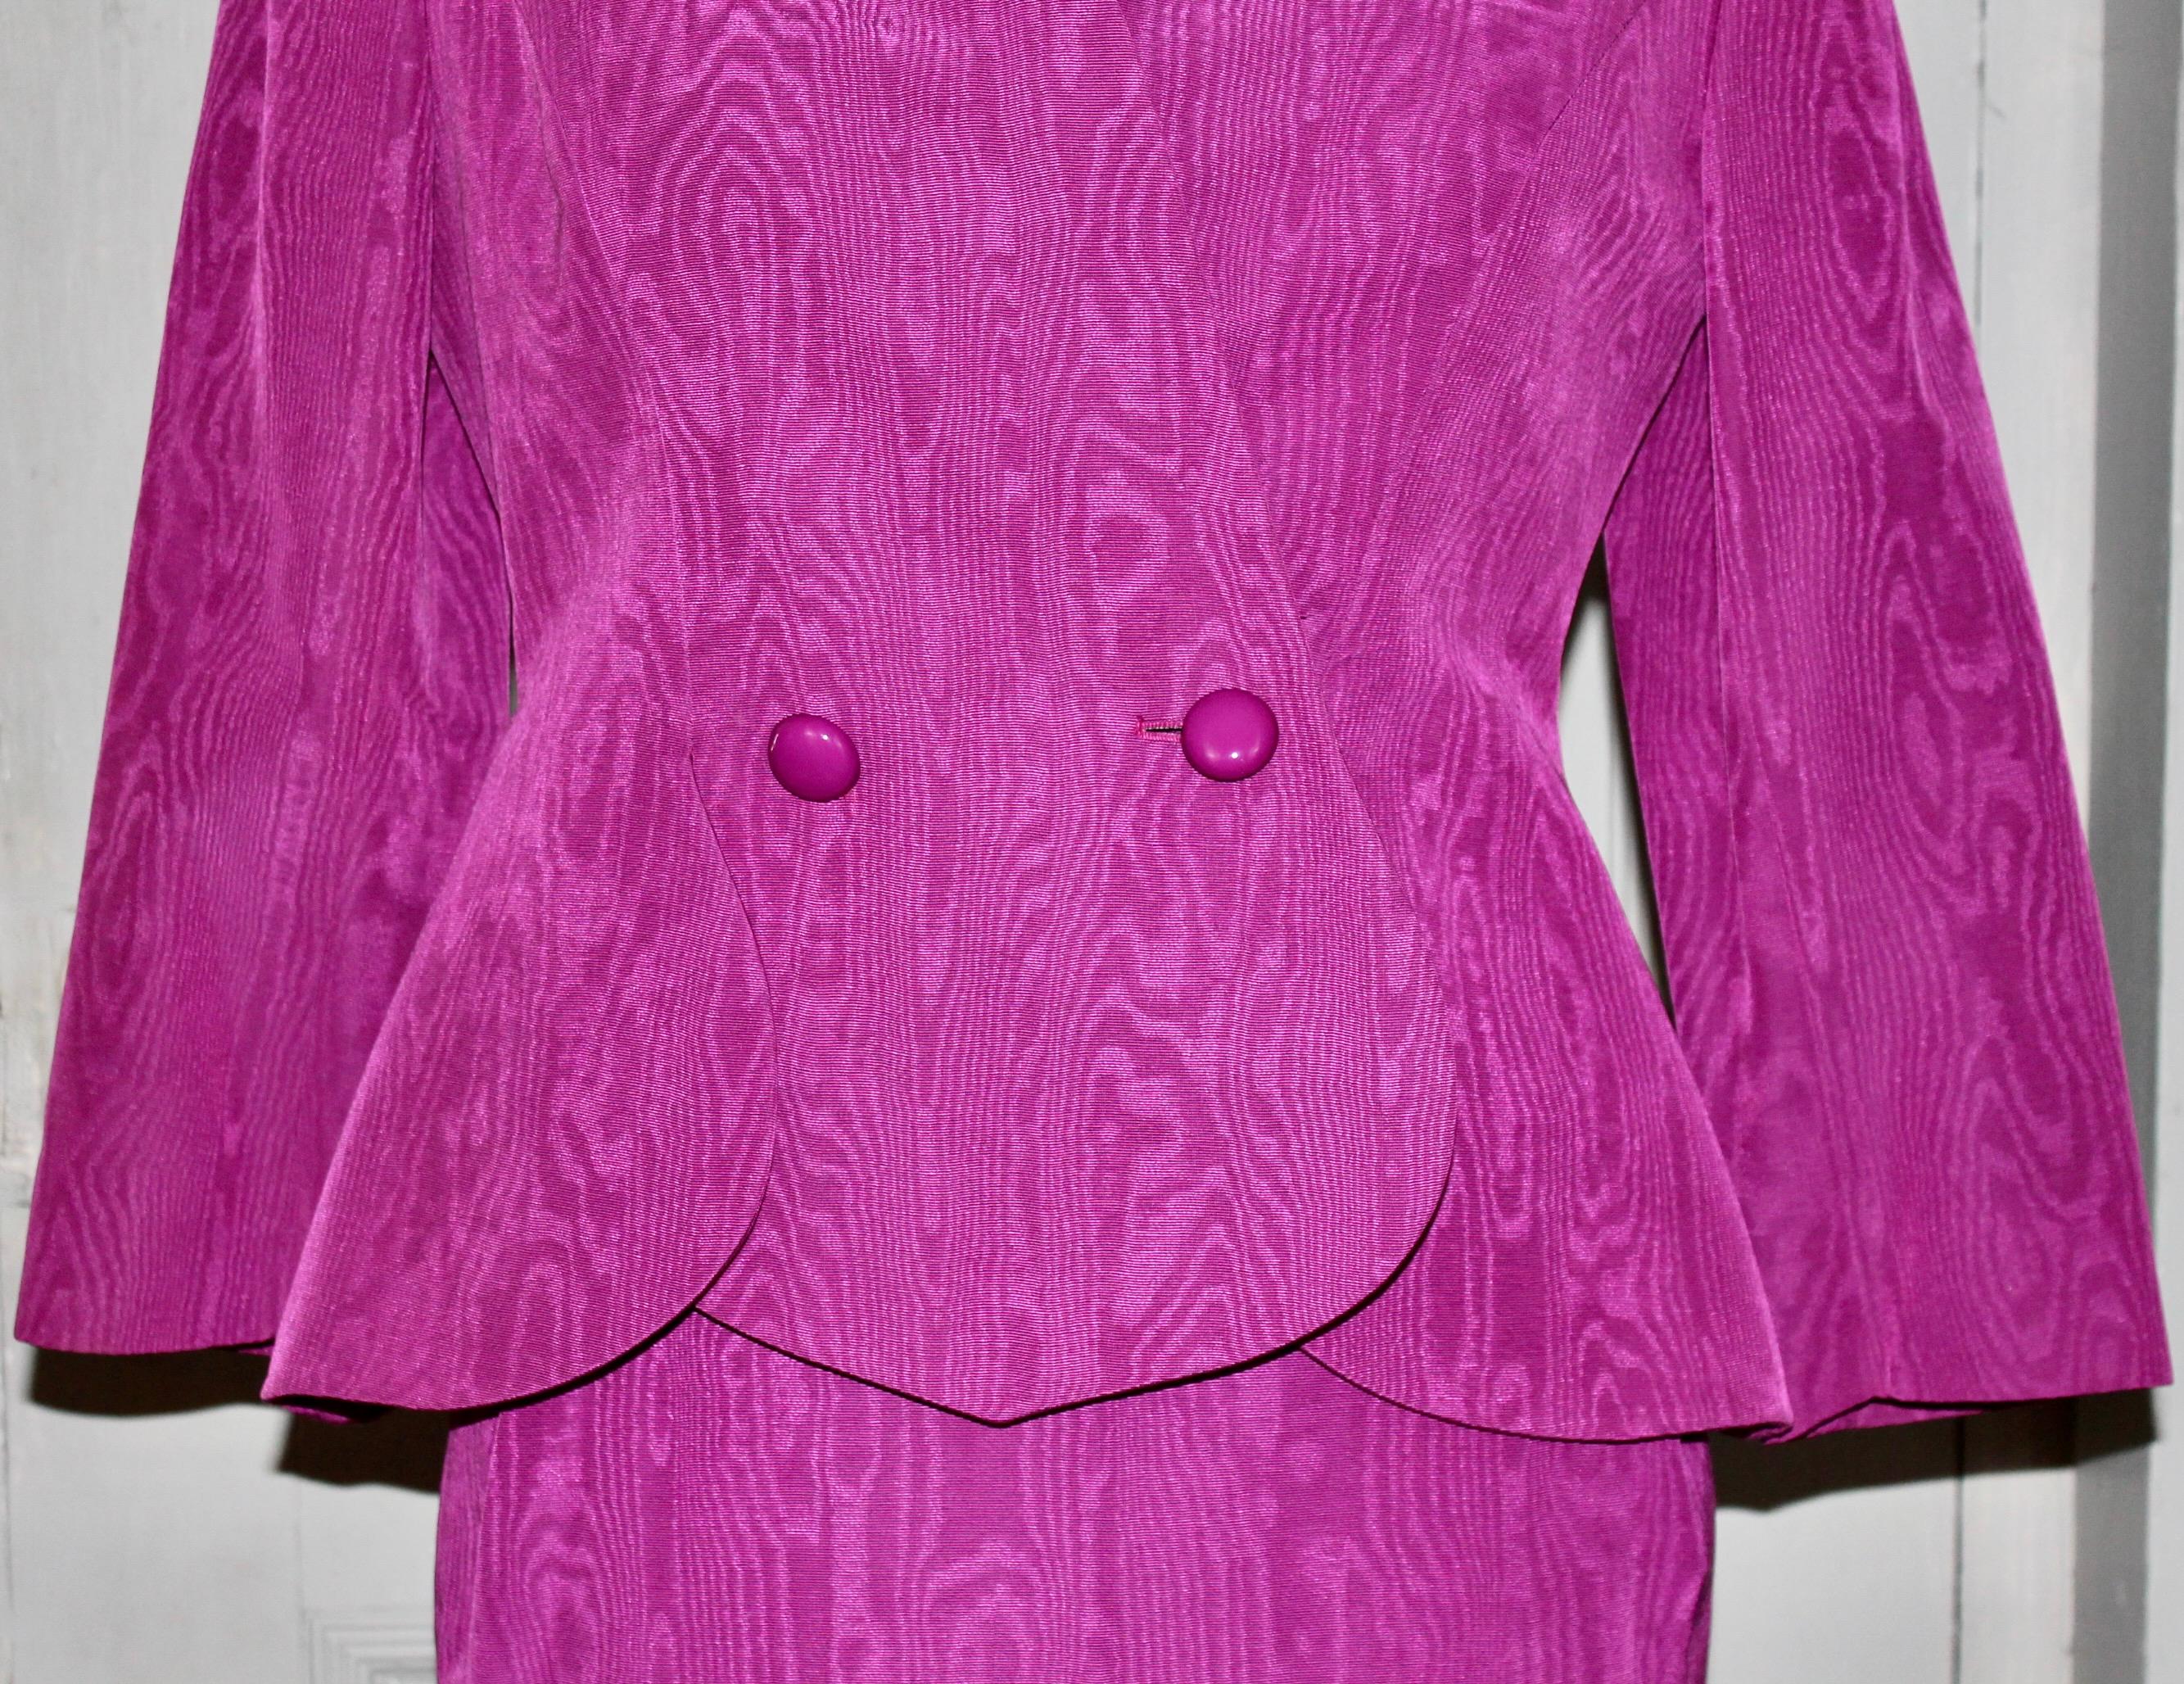 Lanvin, Paris Magenta Moire Suit For Sale 1